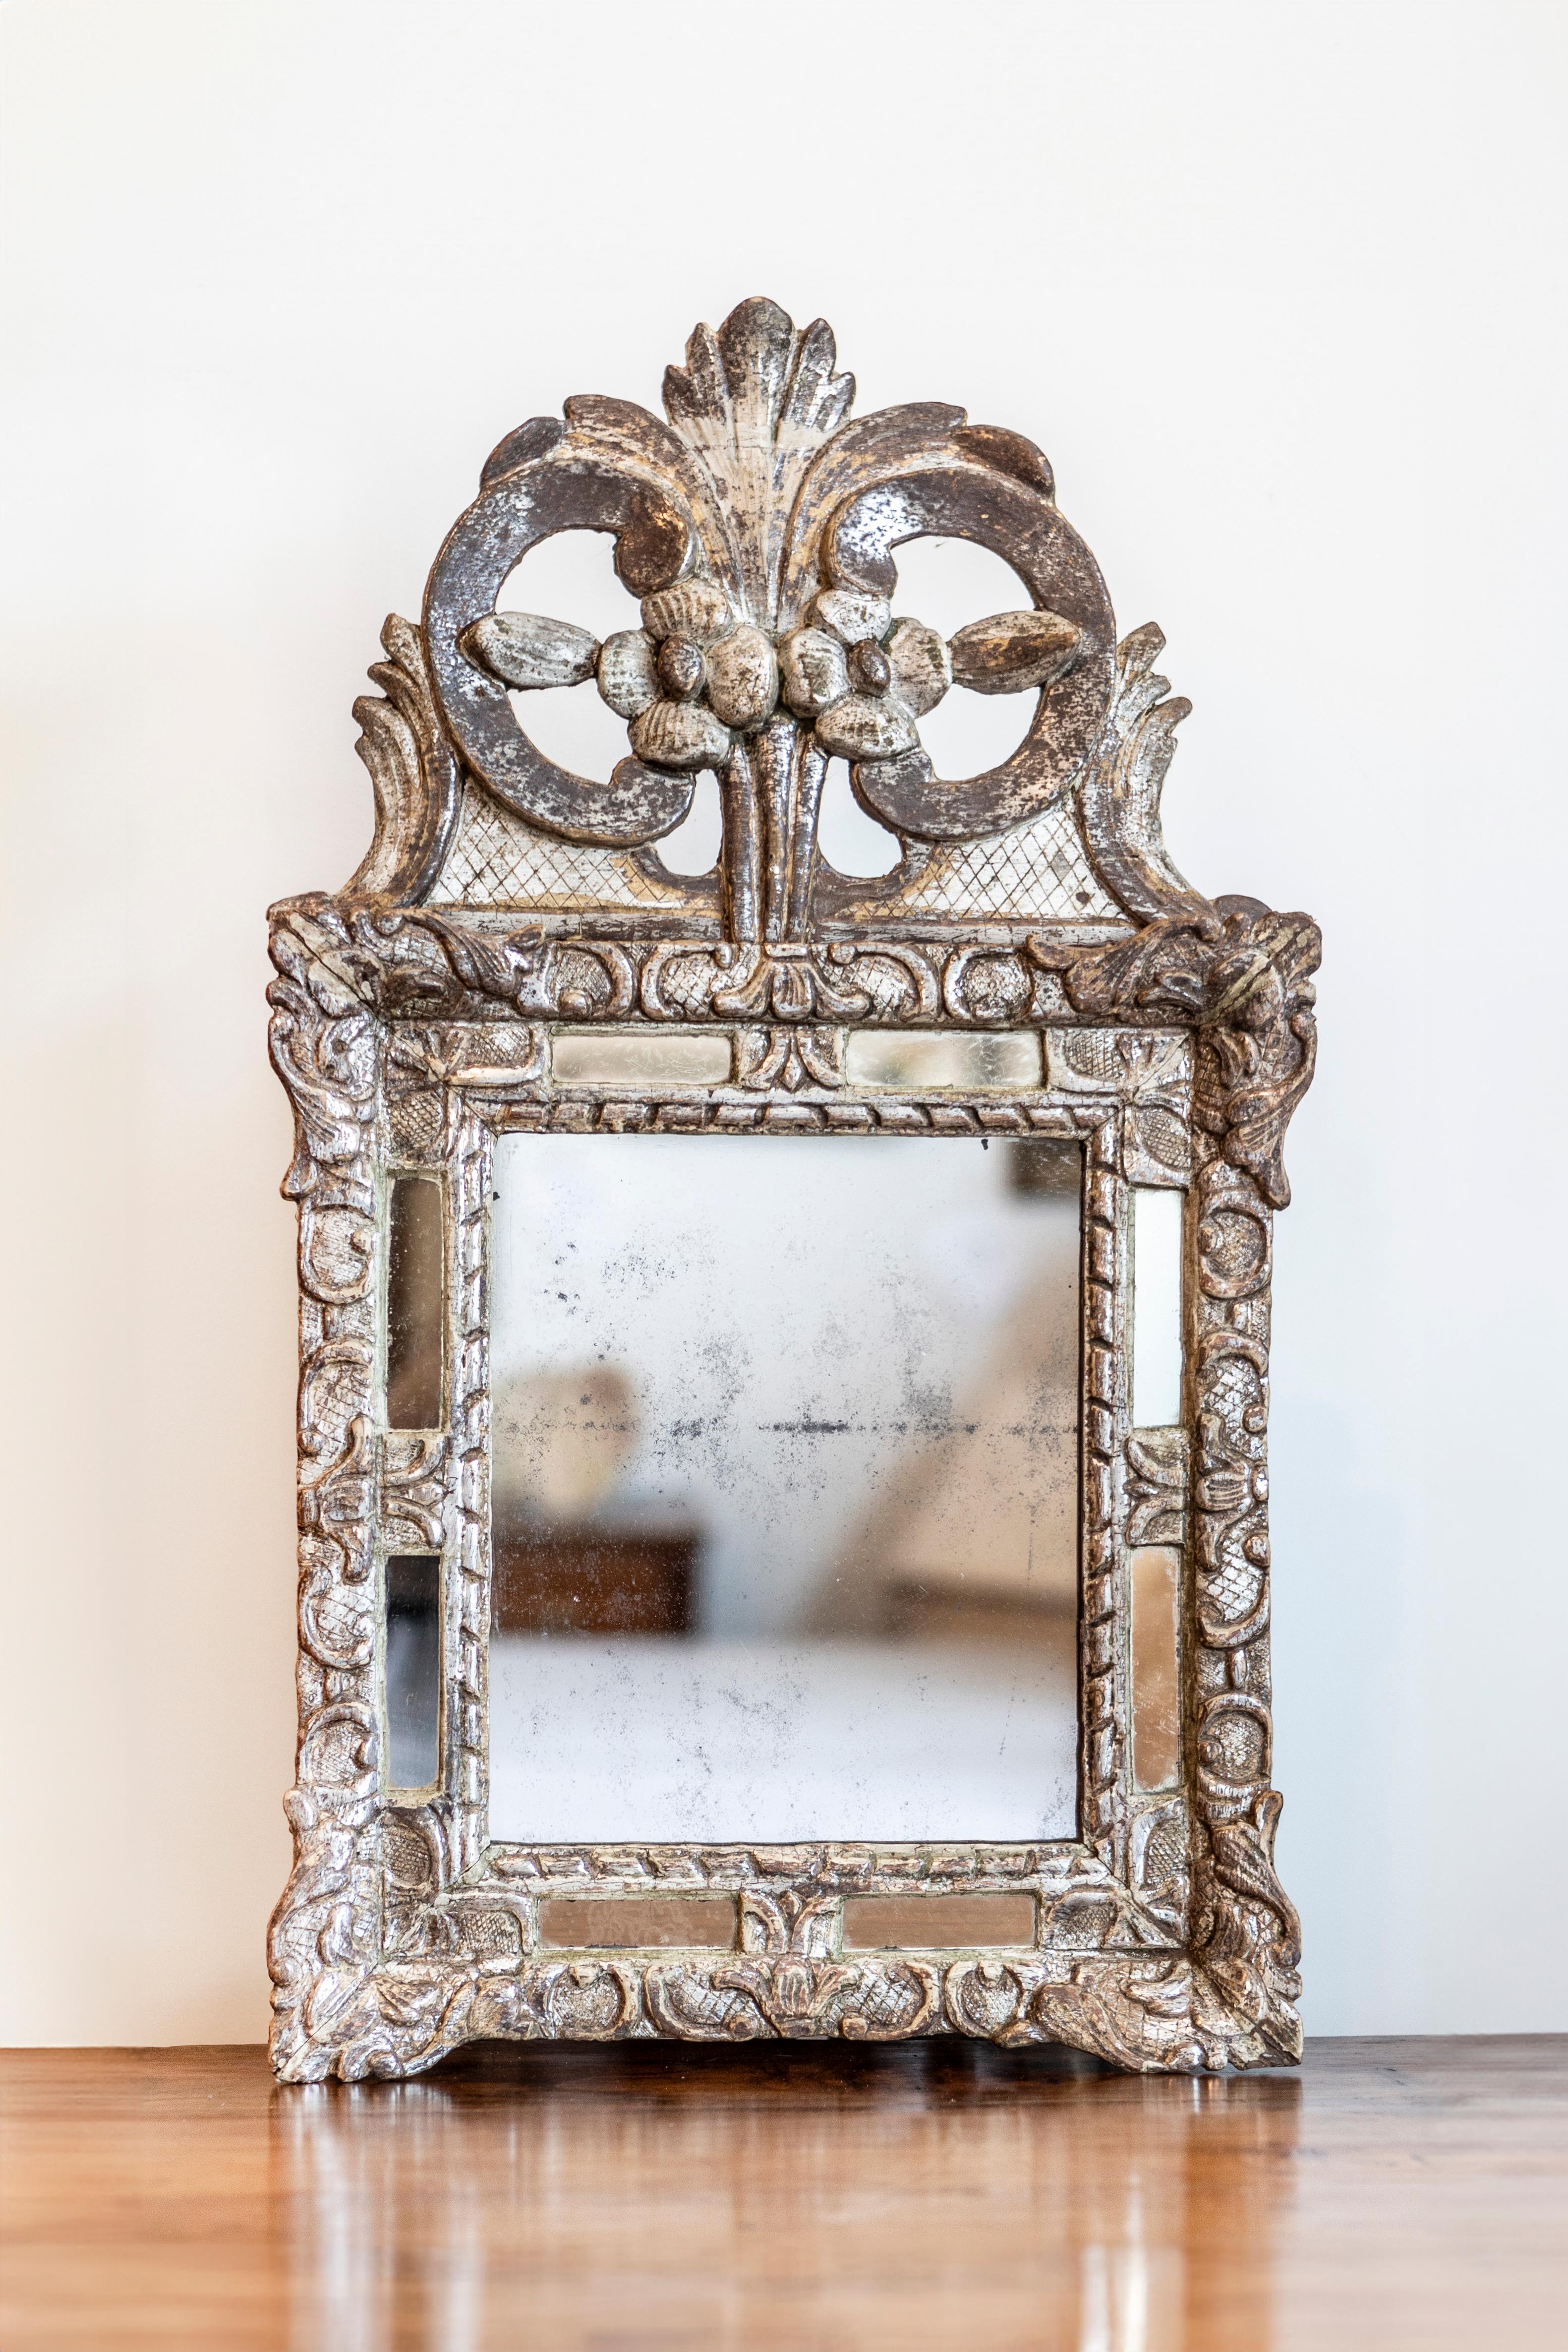 Miroir d'époque Régence en argent parcellaire doré avec une crête florale sculptée. Cet exquis miroir en argent doré d'époque Régence témoigne de l'élégance d'un style de transition qui fait le lien entre la grandeur des décors Louis XIV et les